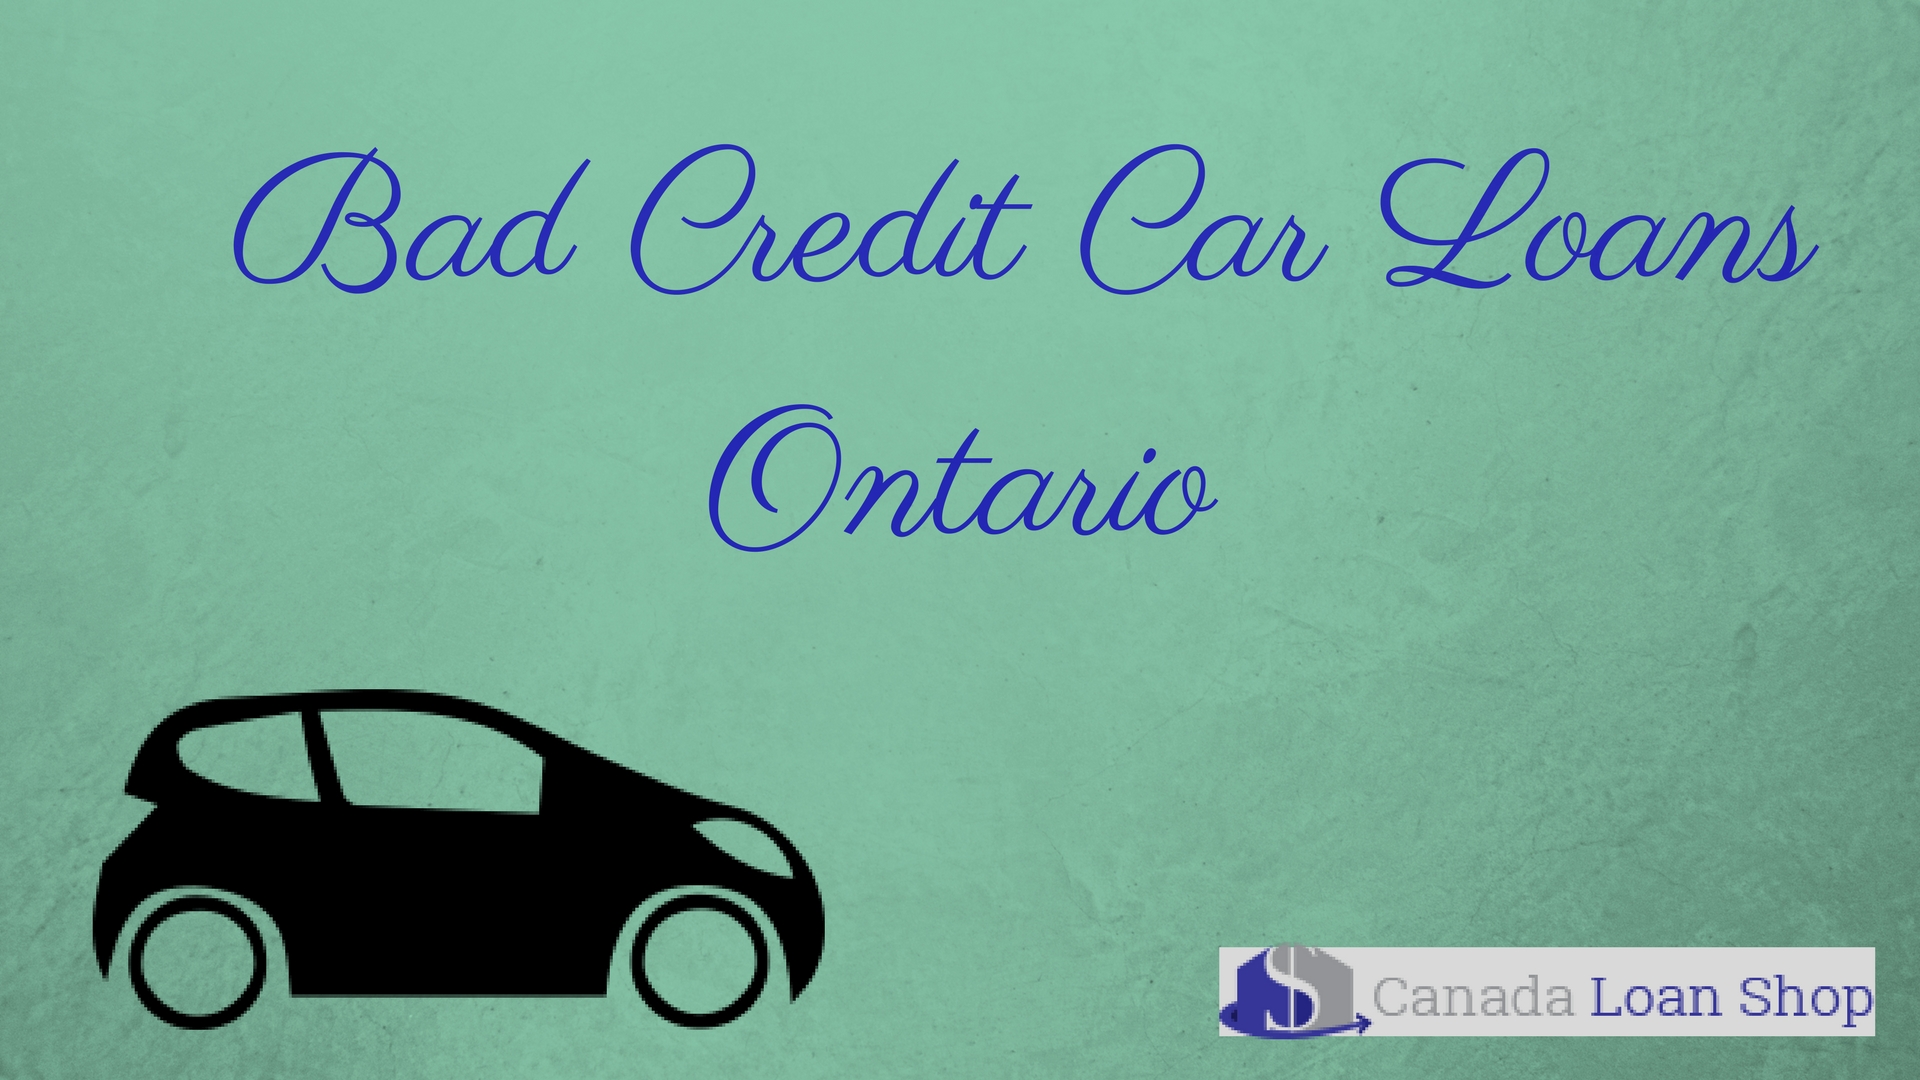 Bad Credit Car Loans Ontario